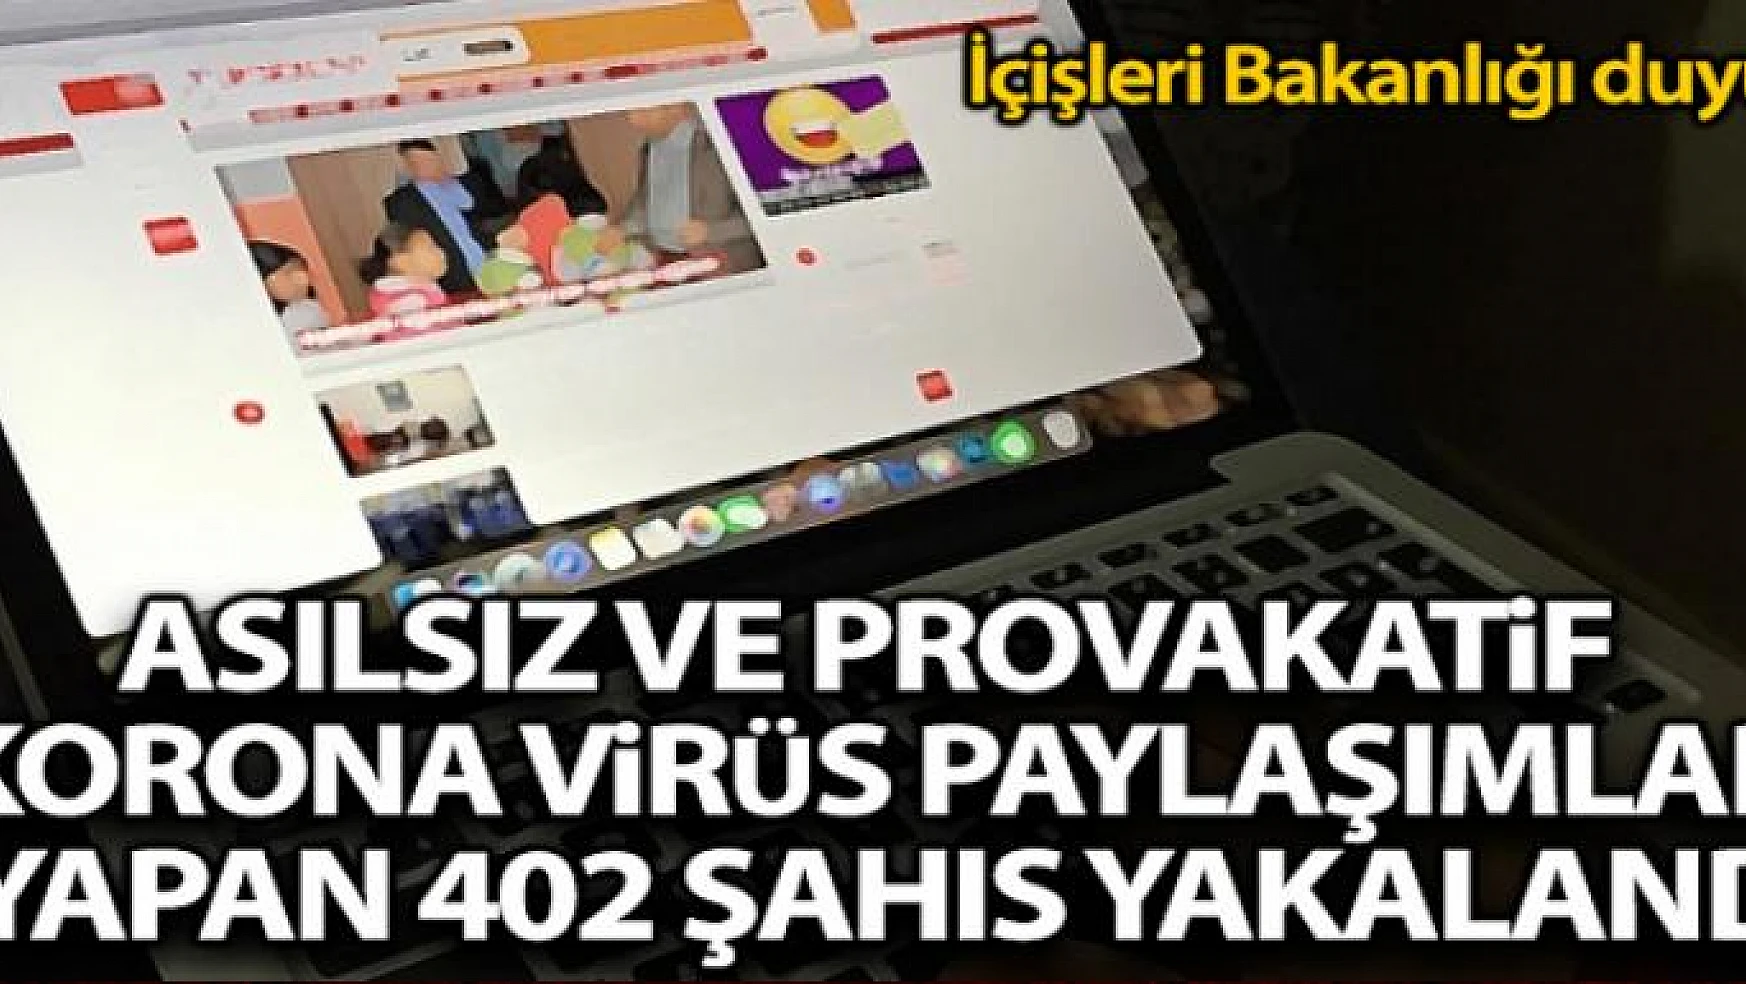 İçişleri Bakanlığı açıkladı: 'Provokatif korona virüs paylaşımları yapan 402 kişi yakalandı'